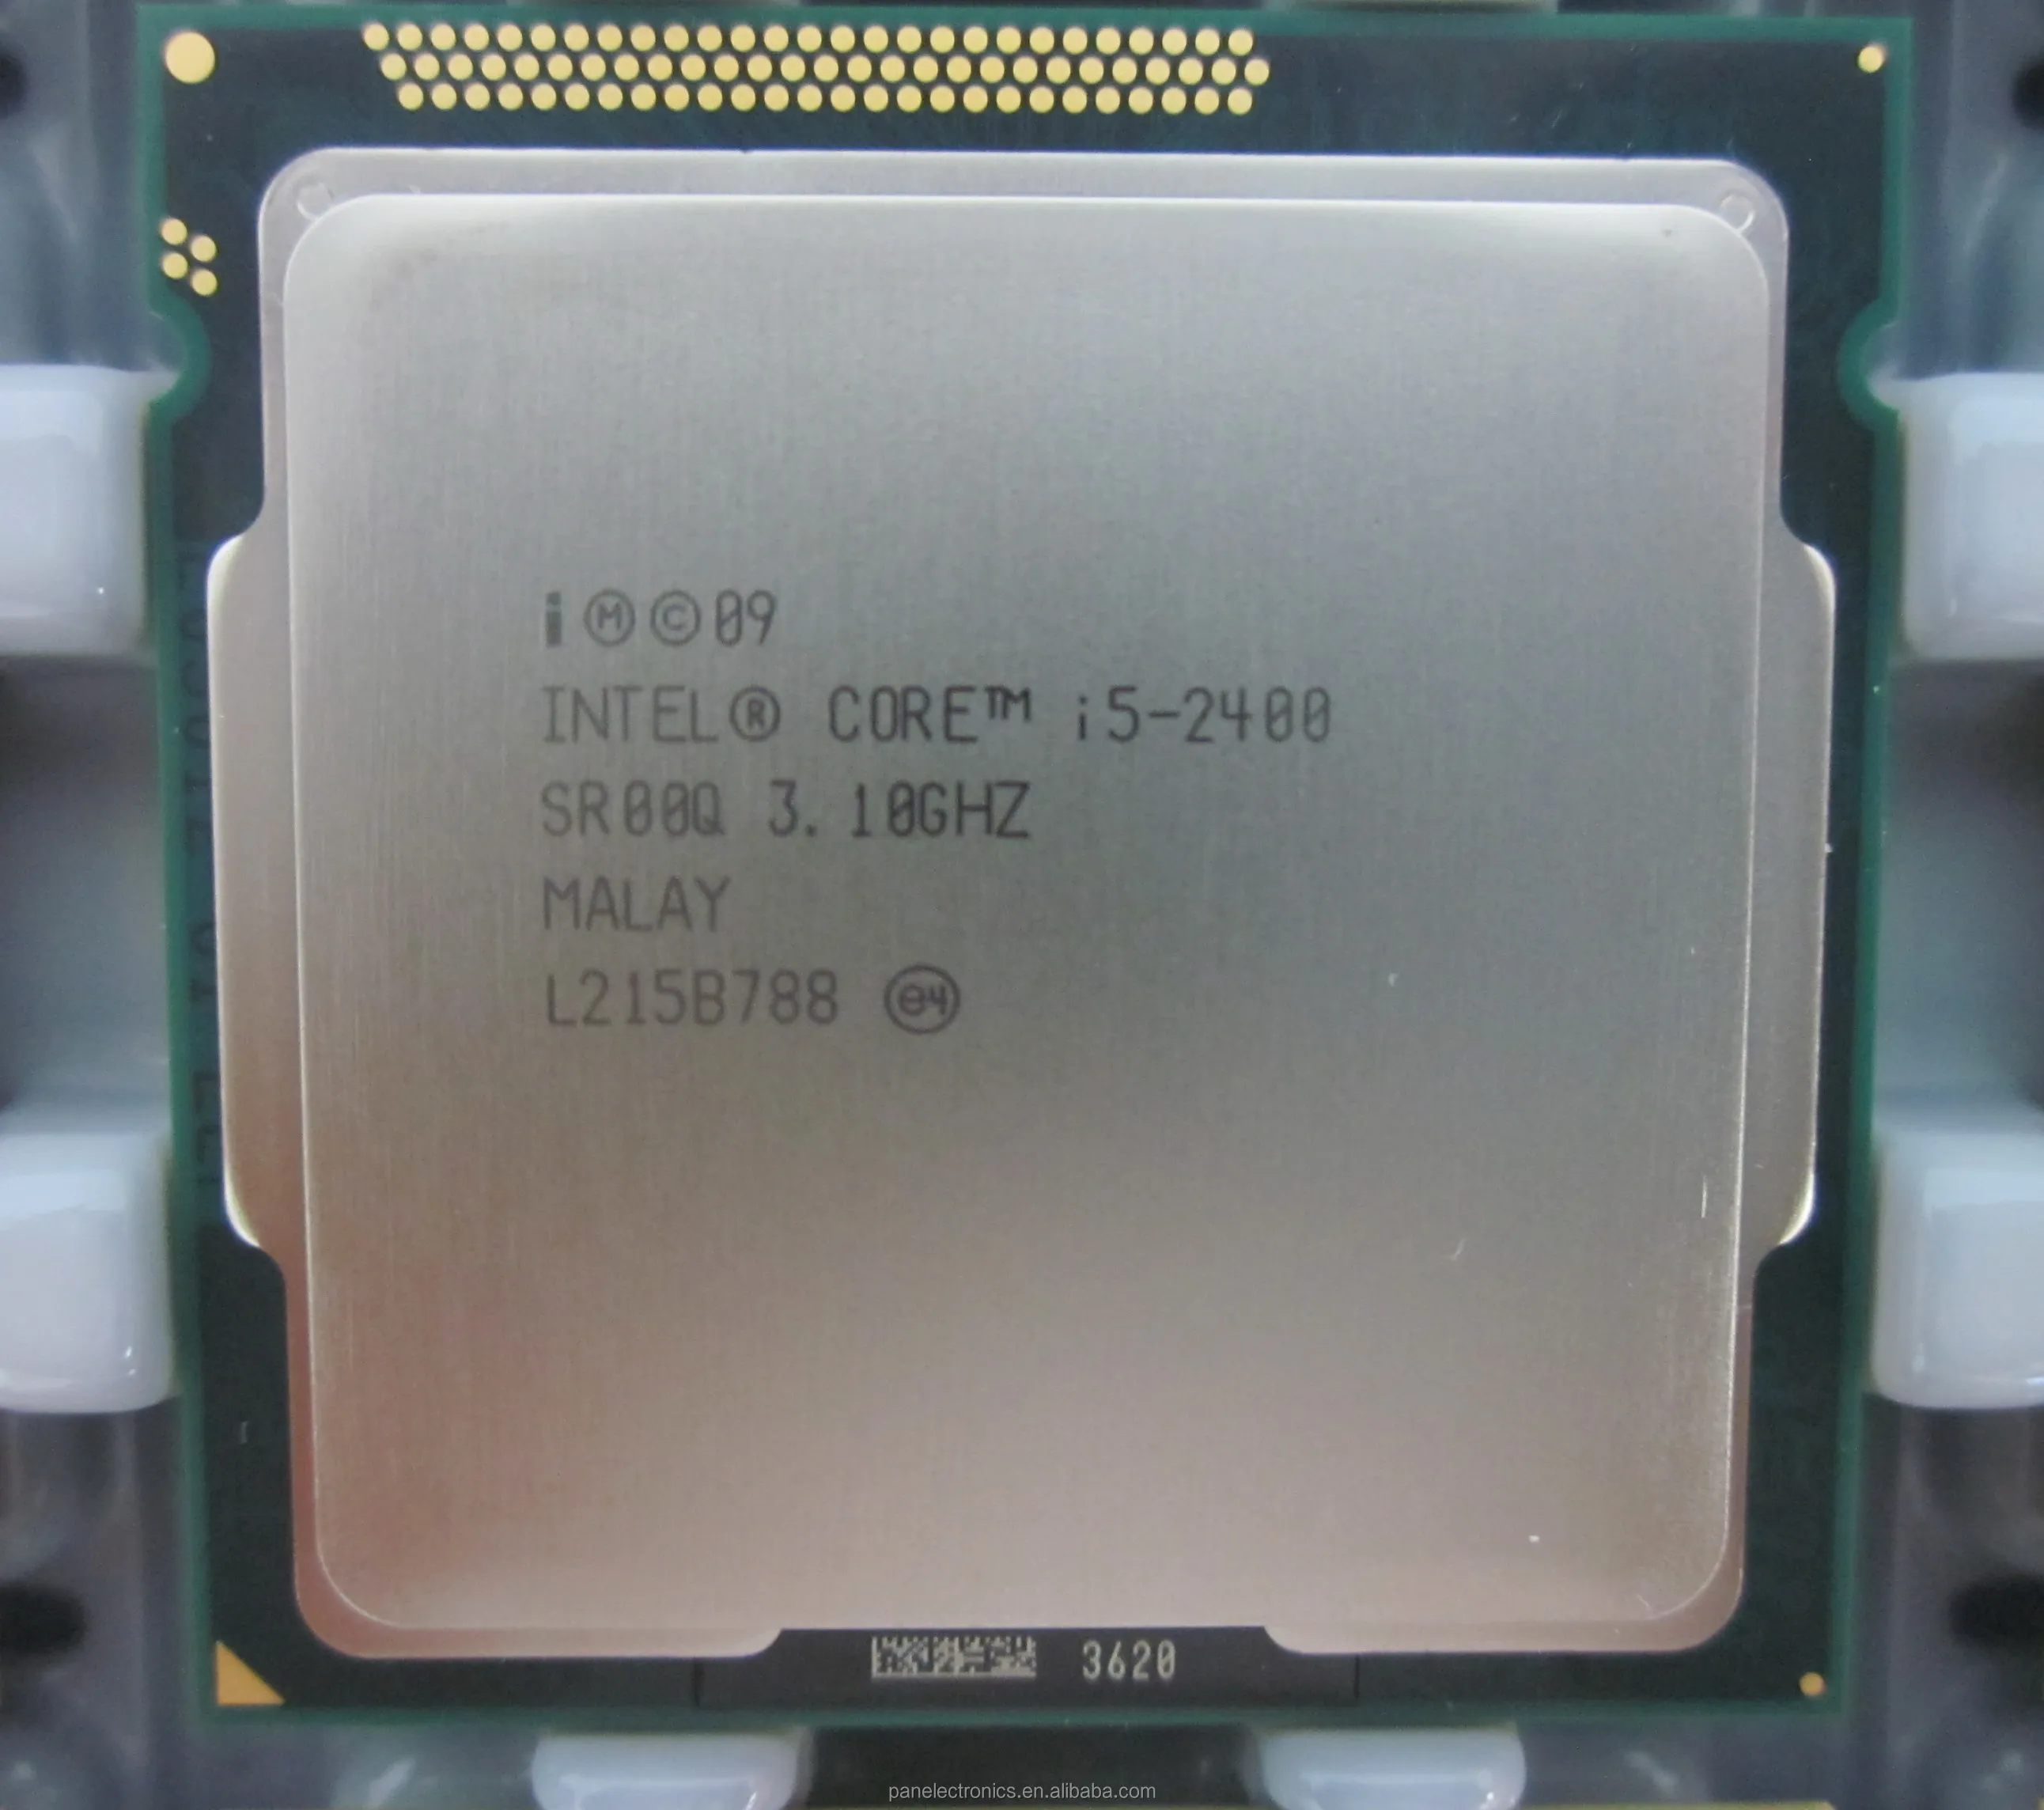 intel core i5 2400 cpu 3.10ghz